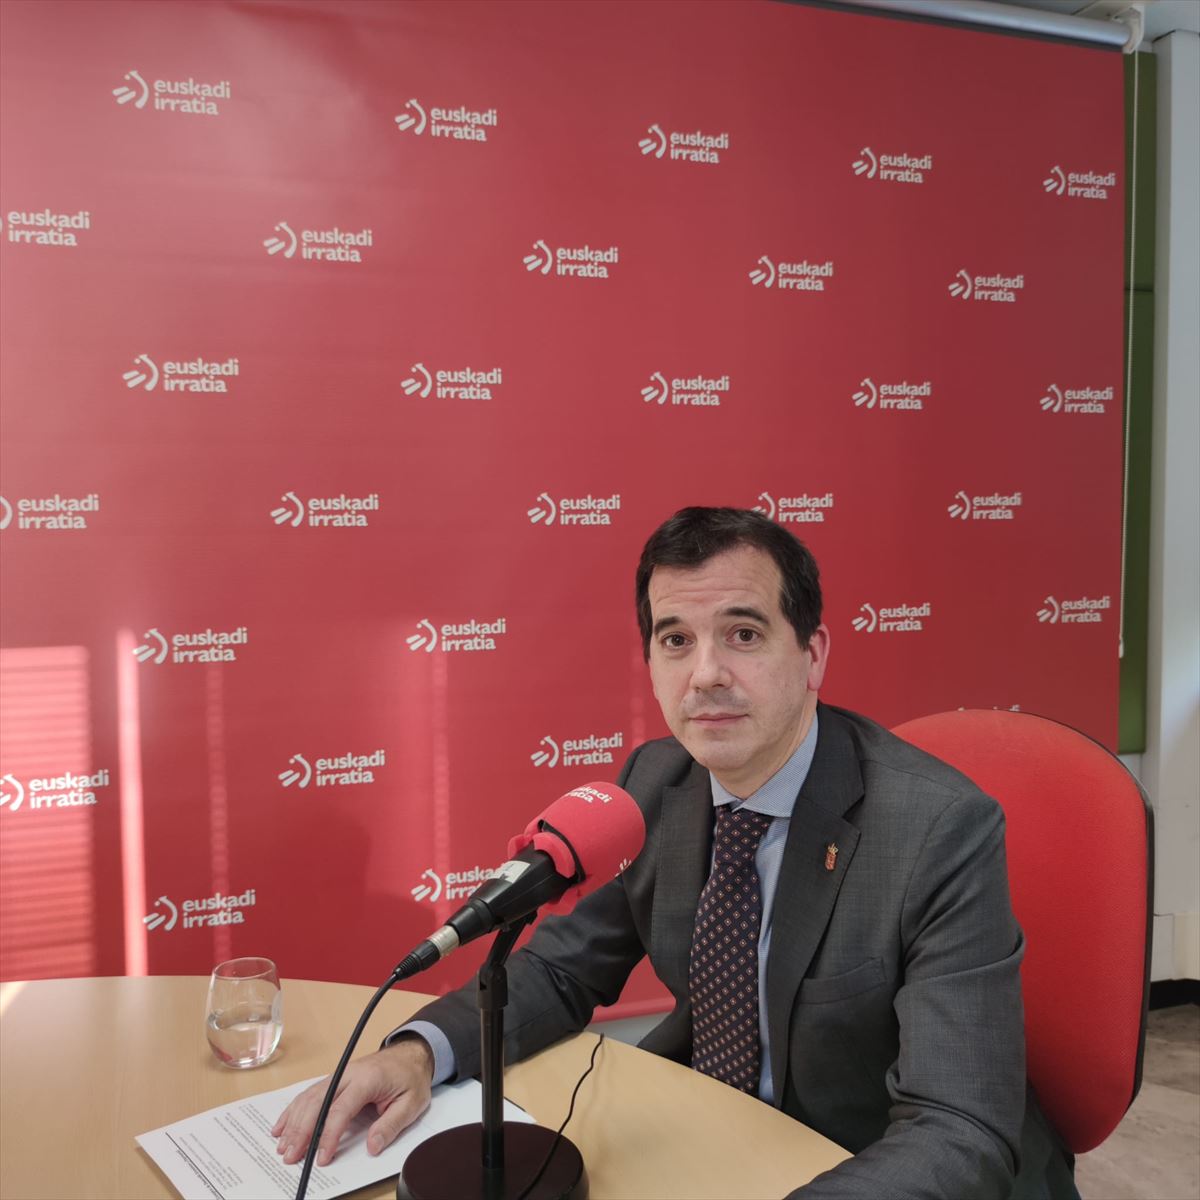 El consejero de Desarrollo Económico del Gobierno de Navarra, Mikel Irujo